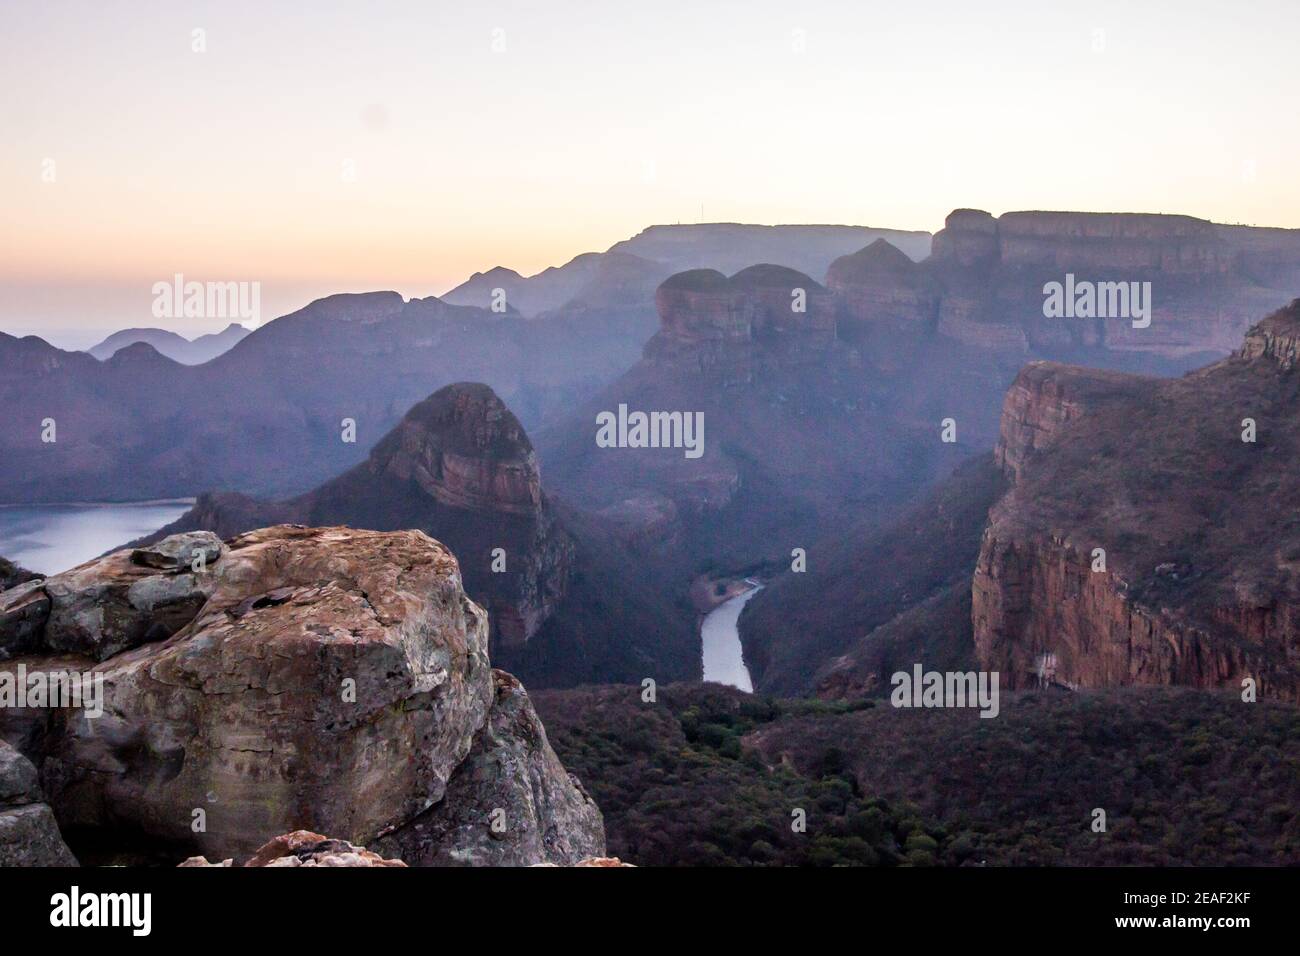 Il Blydepoort Canyon del Sud Africa, il canyon verde più grande del mondo, e le sue iconiche montagne chiamate i tre Rondawel, all'alba Foto Stock